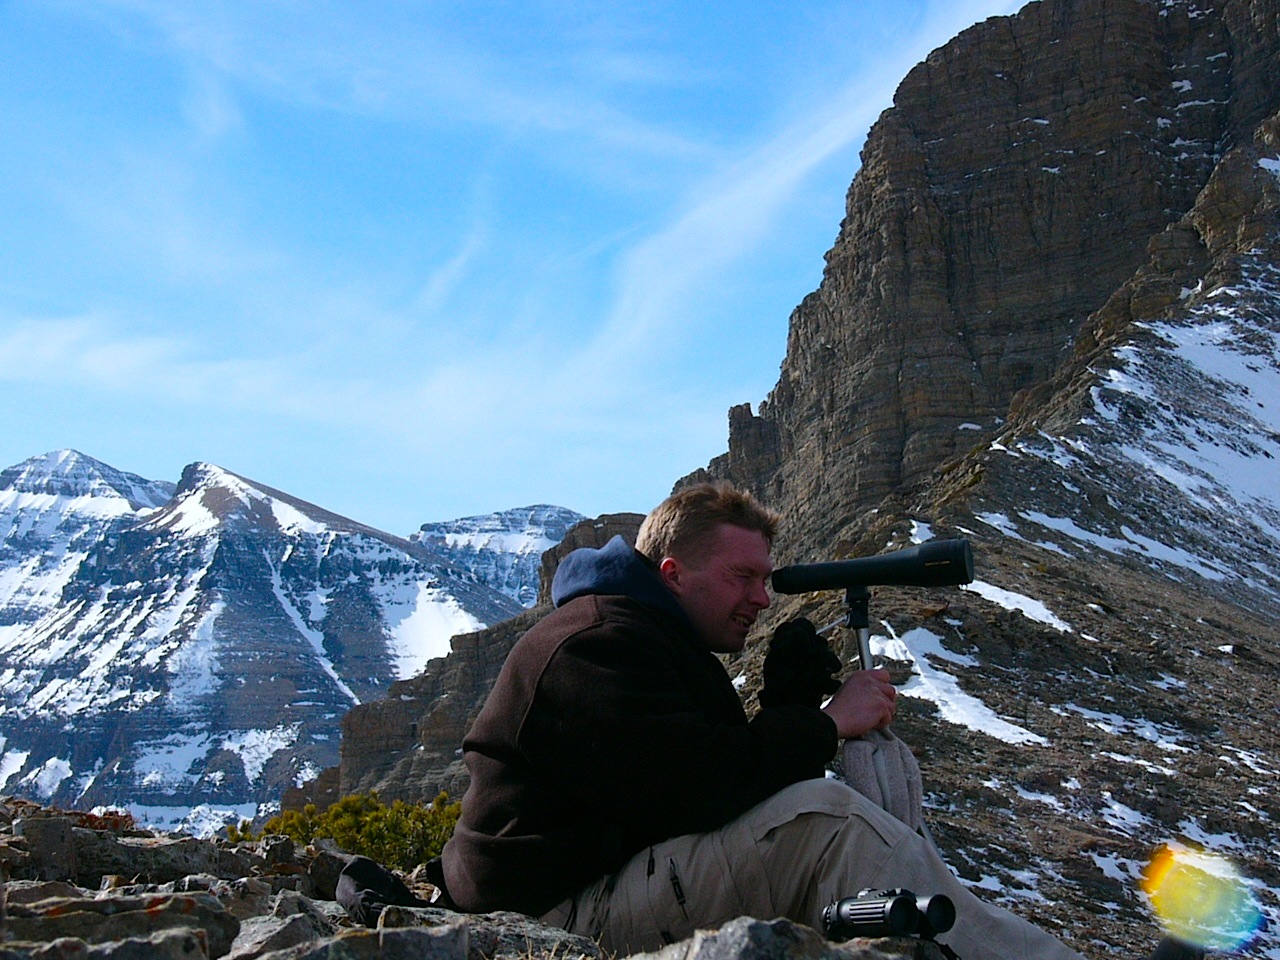 002 - Monitoring Bighorn Ewe Populations